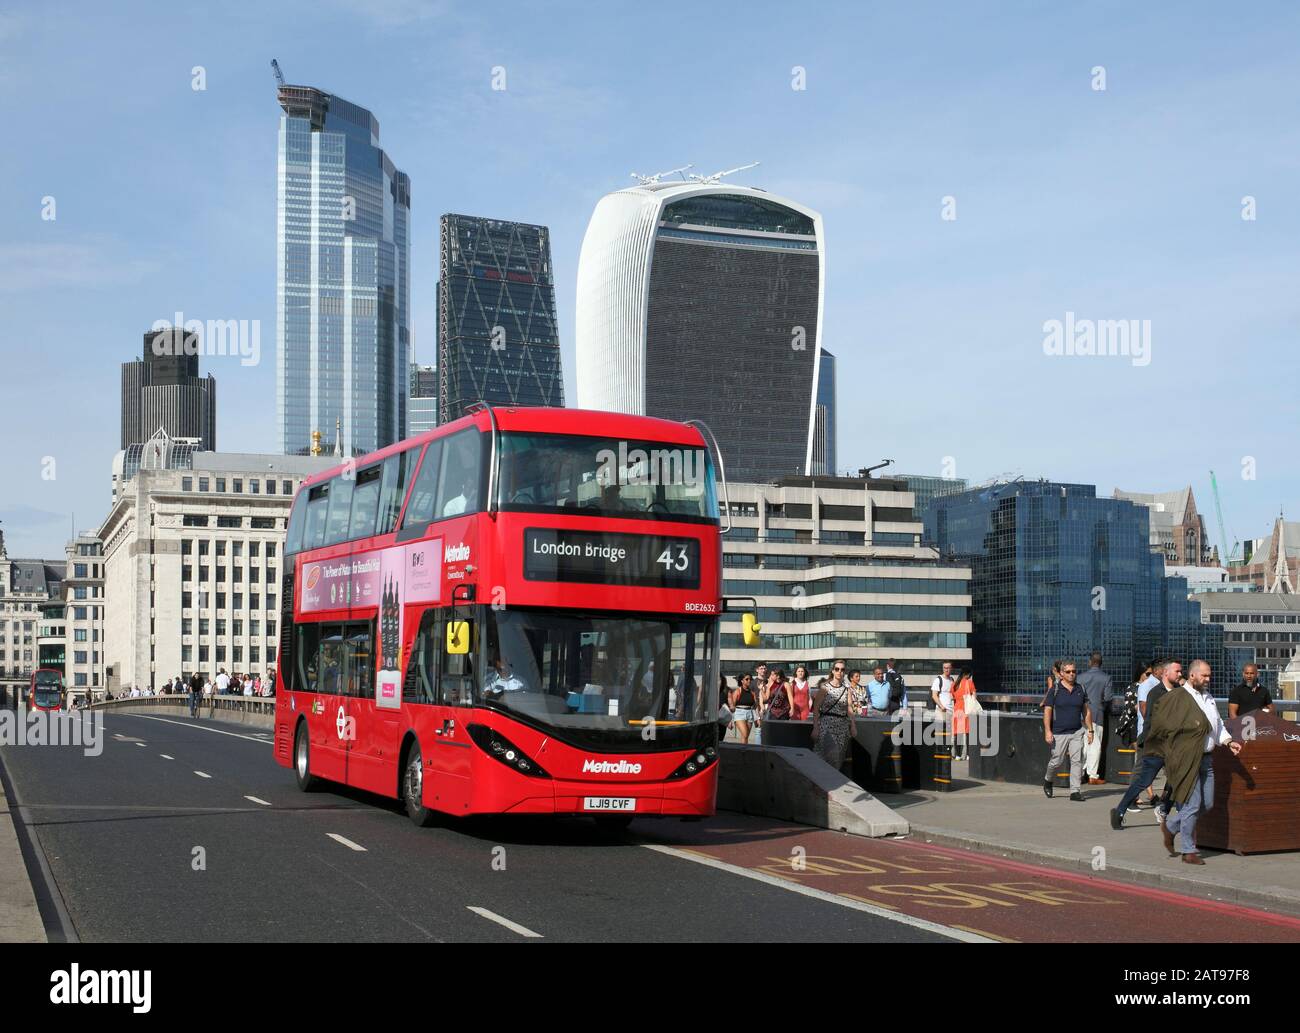 Un bus électrique à deux étages (alimenté par batterie) traversant London Bridge, Londres. Contexte : bâtiments de grande taille dans la ville de Londres. Banque D'Images